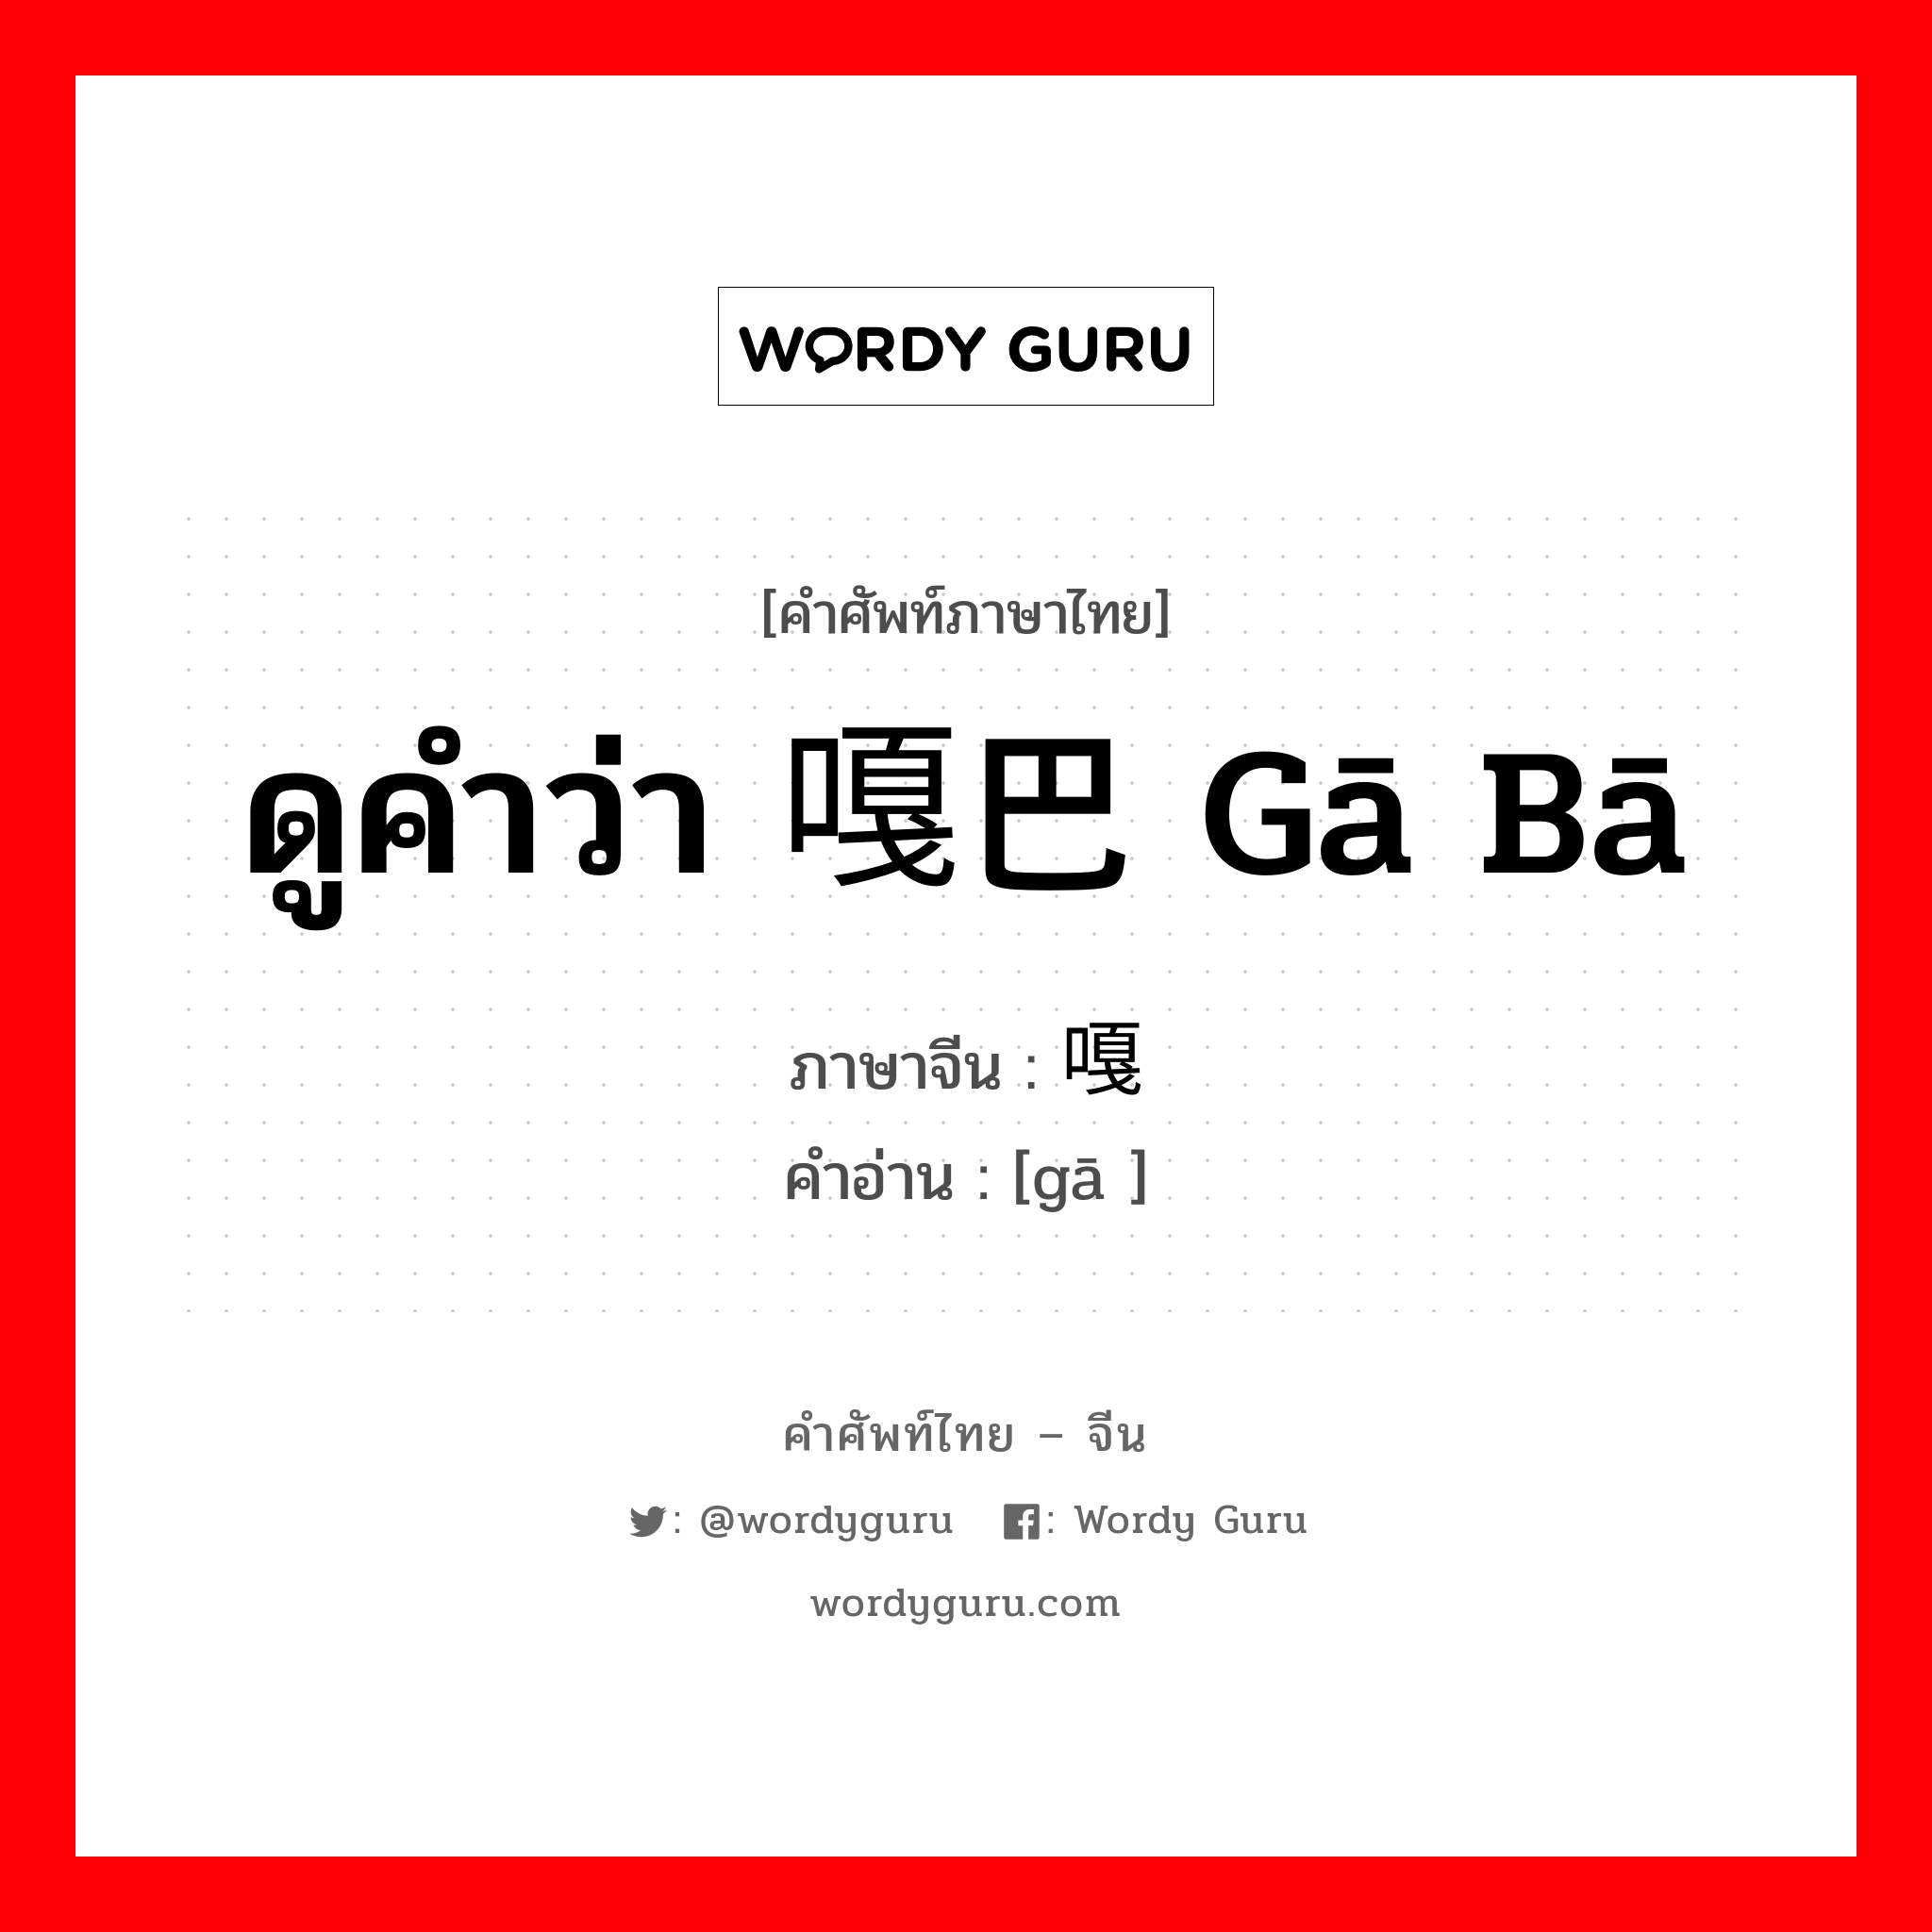 ดูคำว่า 嘎巴 gā bā ภาษาจีนคืออะไร, คำศัพท์ภาษาไทย - จีน ดูคำว่า 嘎巴 gā bā ภาษาจีน 嘎 คำอ่าน [gā ]